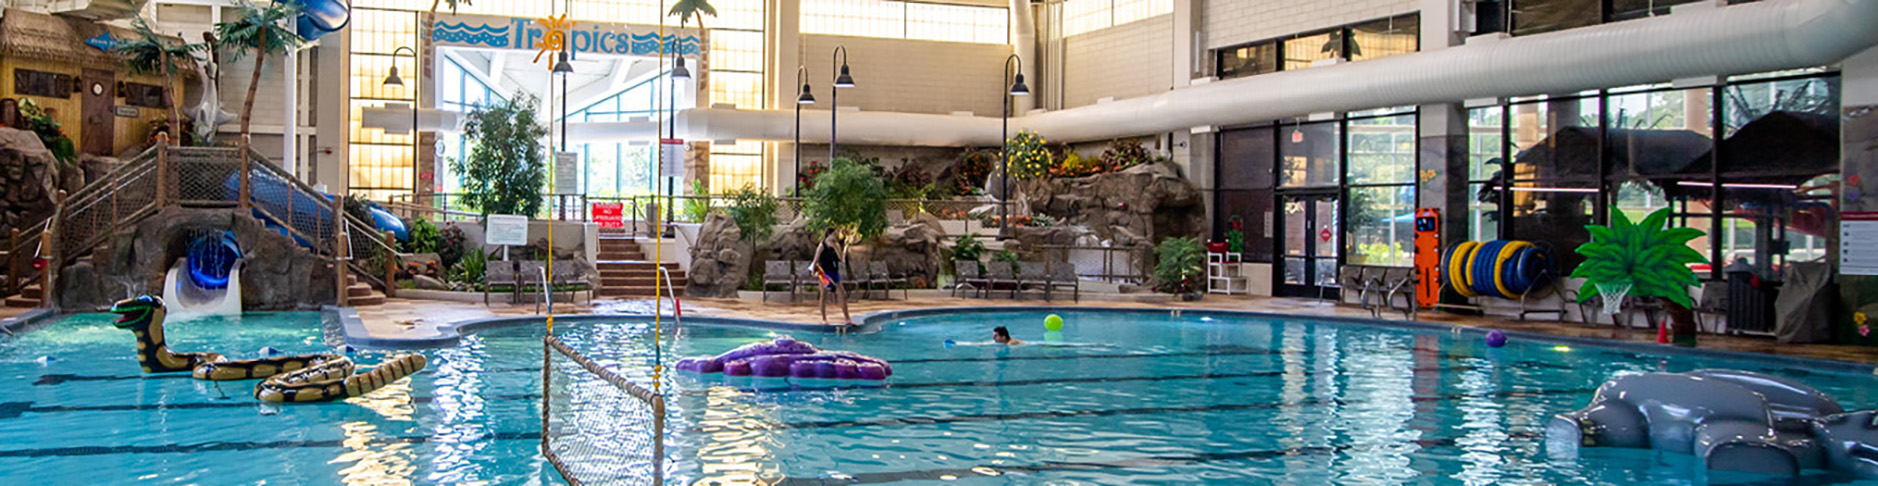 Indoor Water Park & Resort, Minneapolis Resort